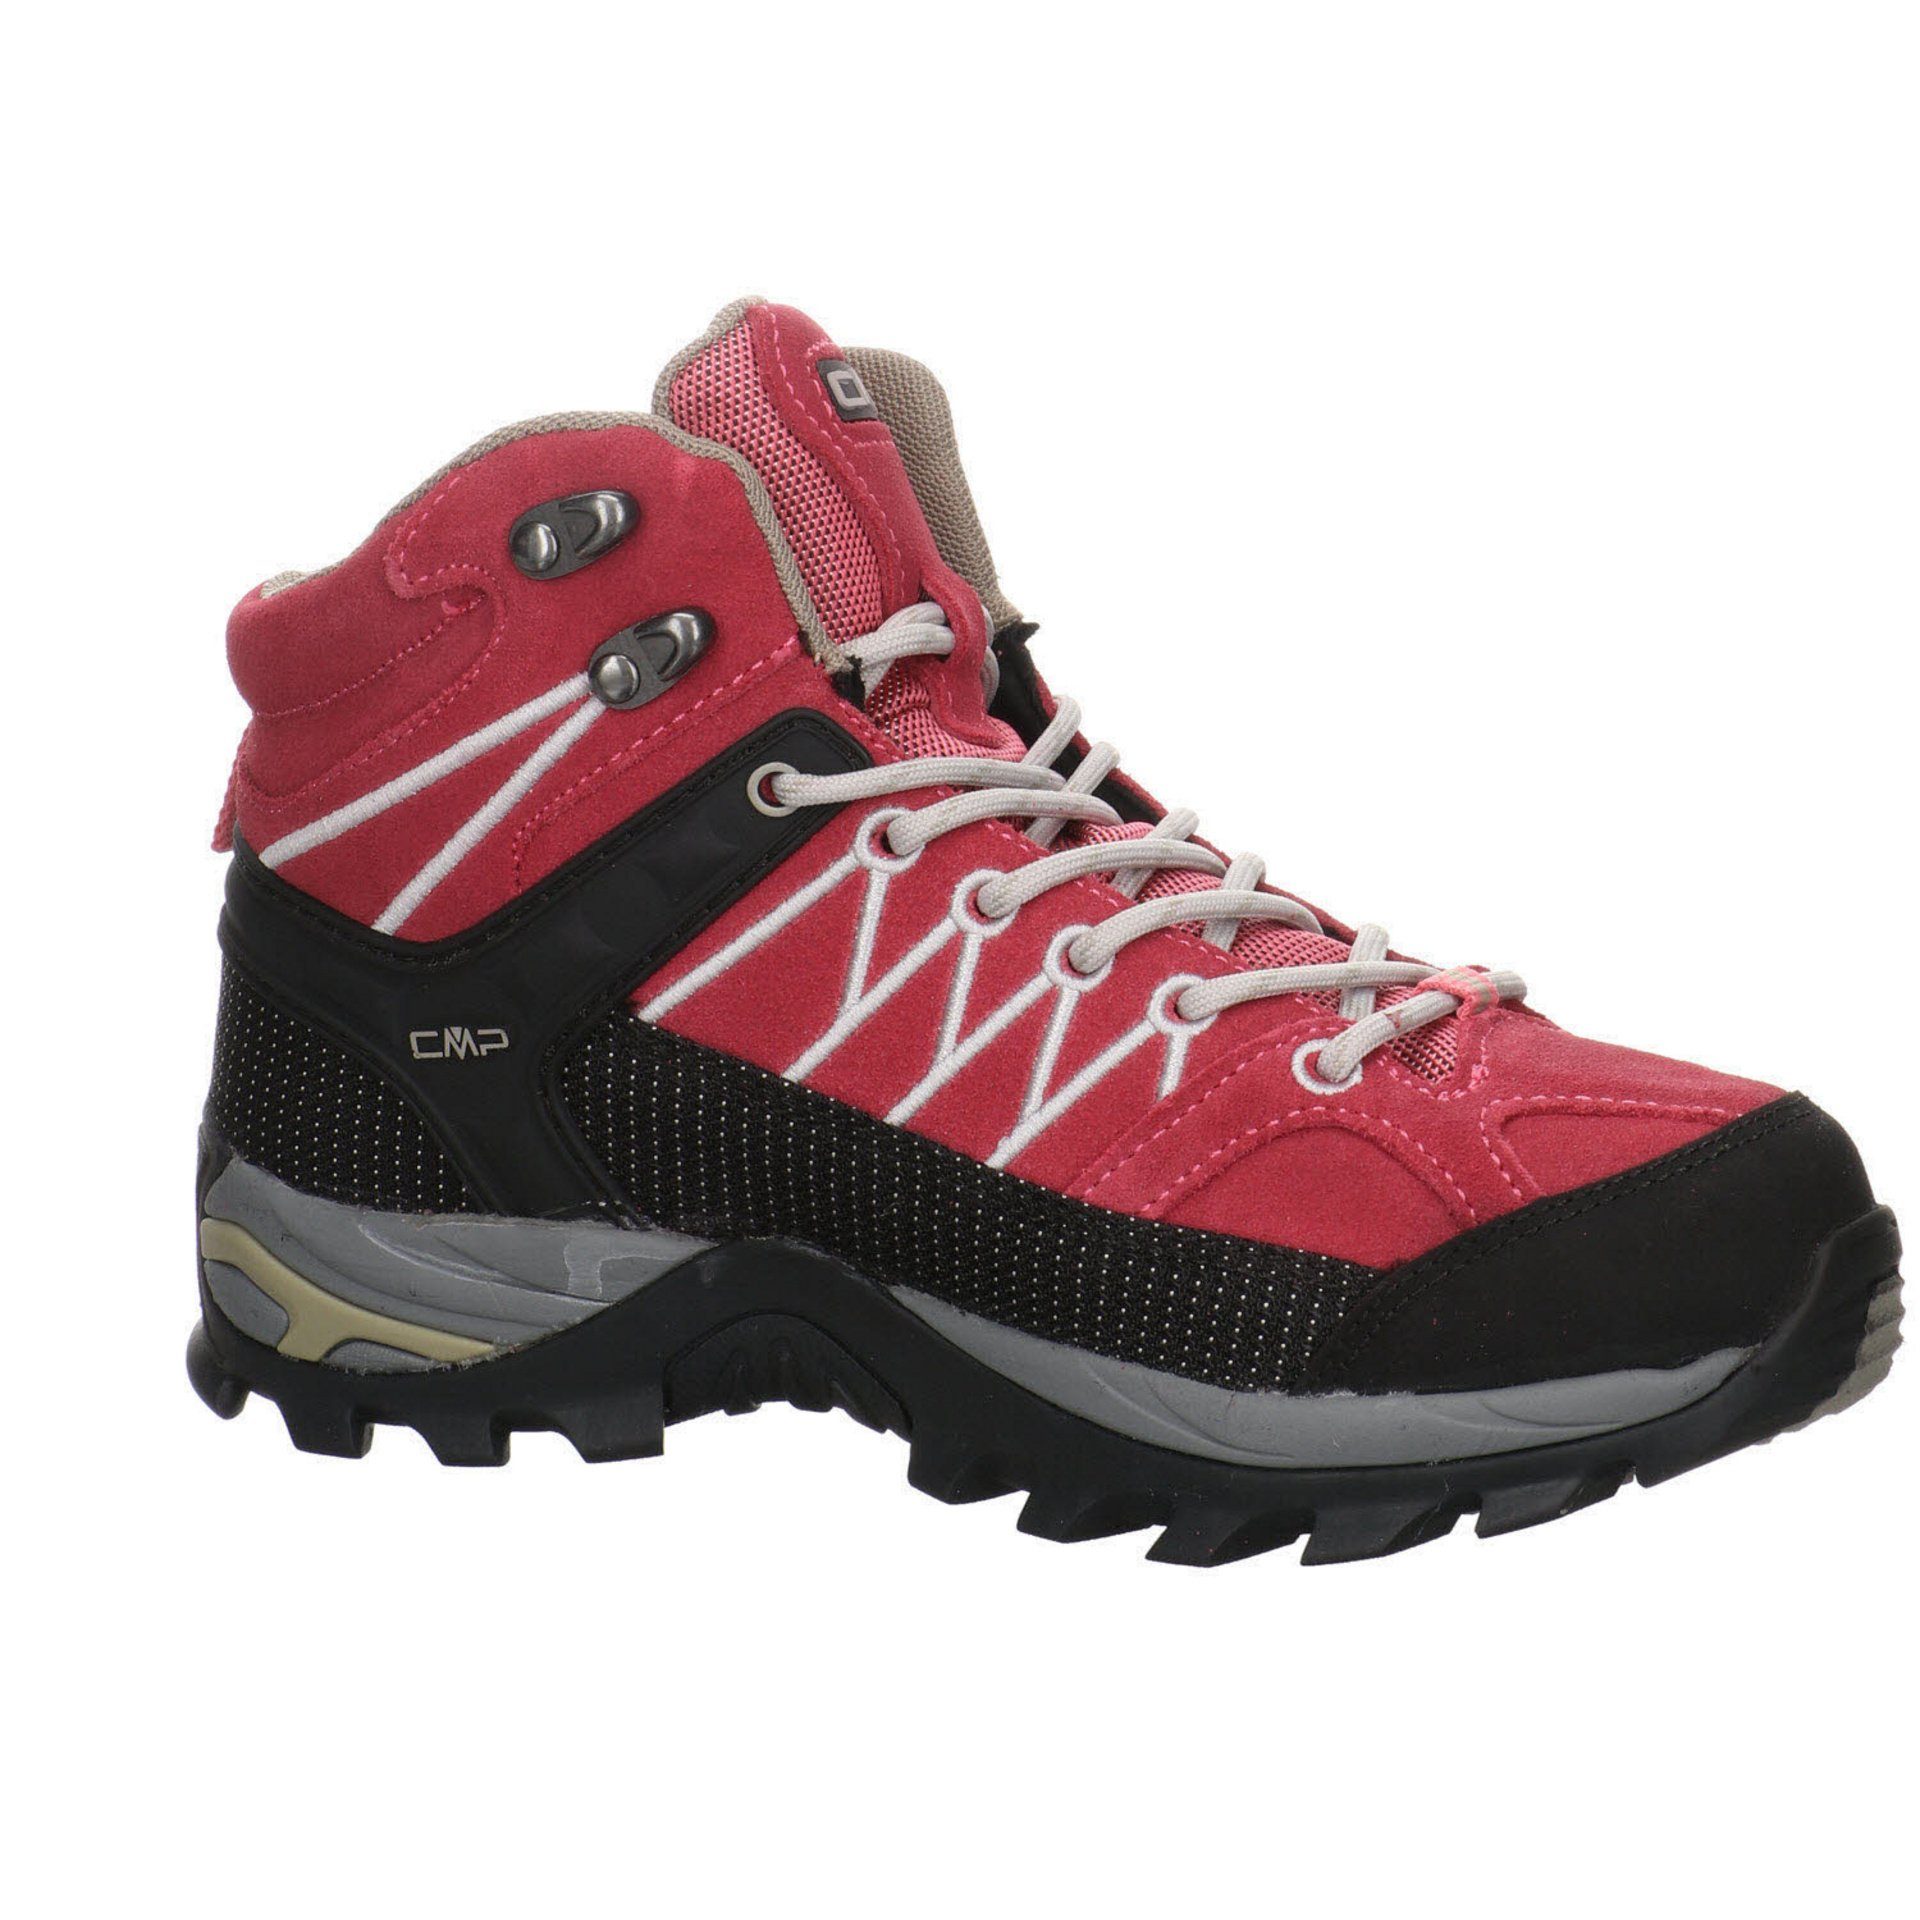 Damen Outdoorschuh ROSE-SAND Schuhe Mid Leder-/Textilkombination CMP Outdoorschuh Outdoor Rigel